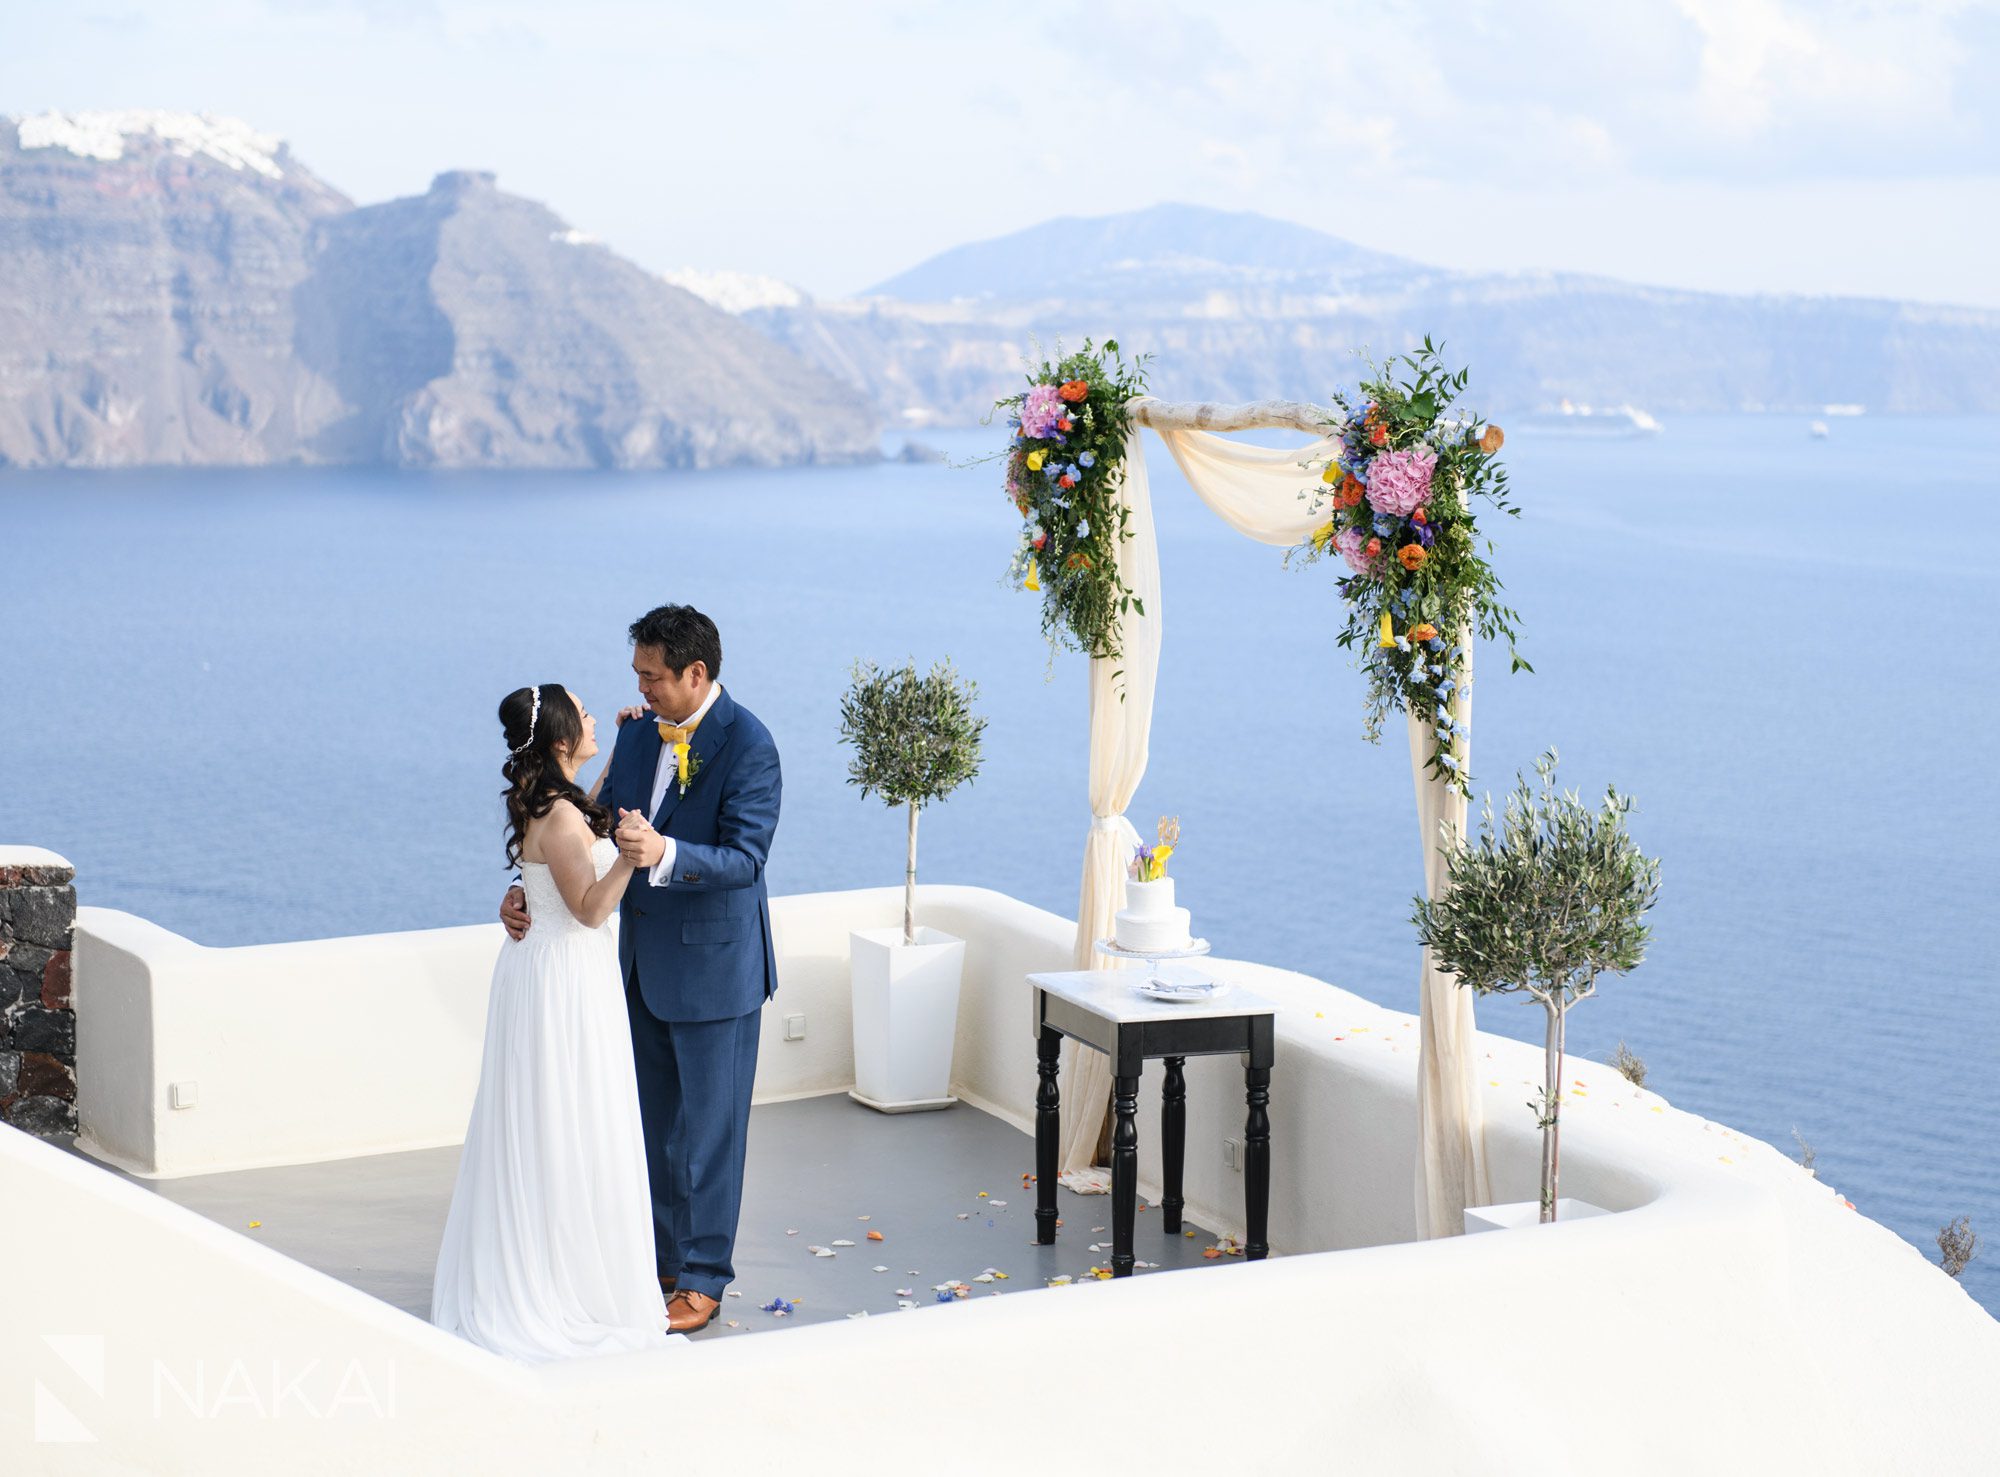 Santorini oia wedding photos destination asian couple